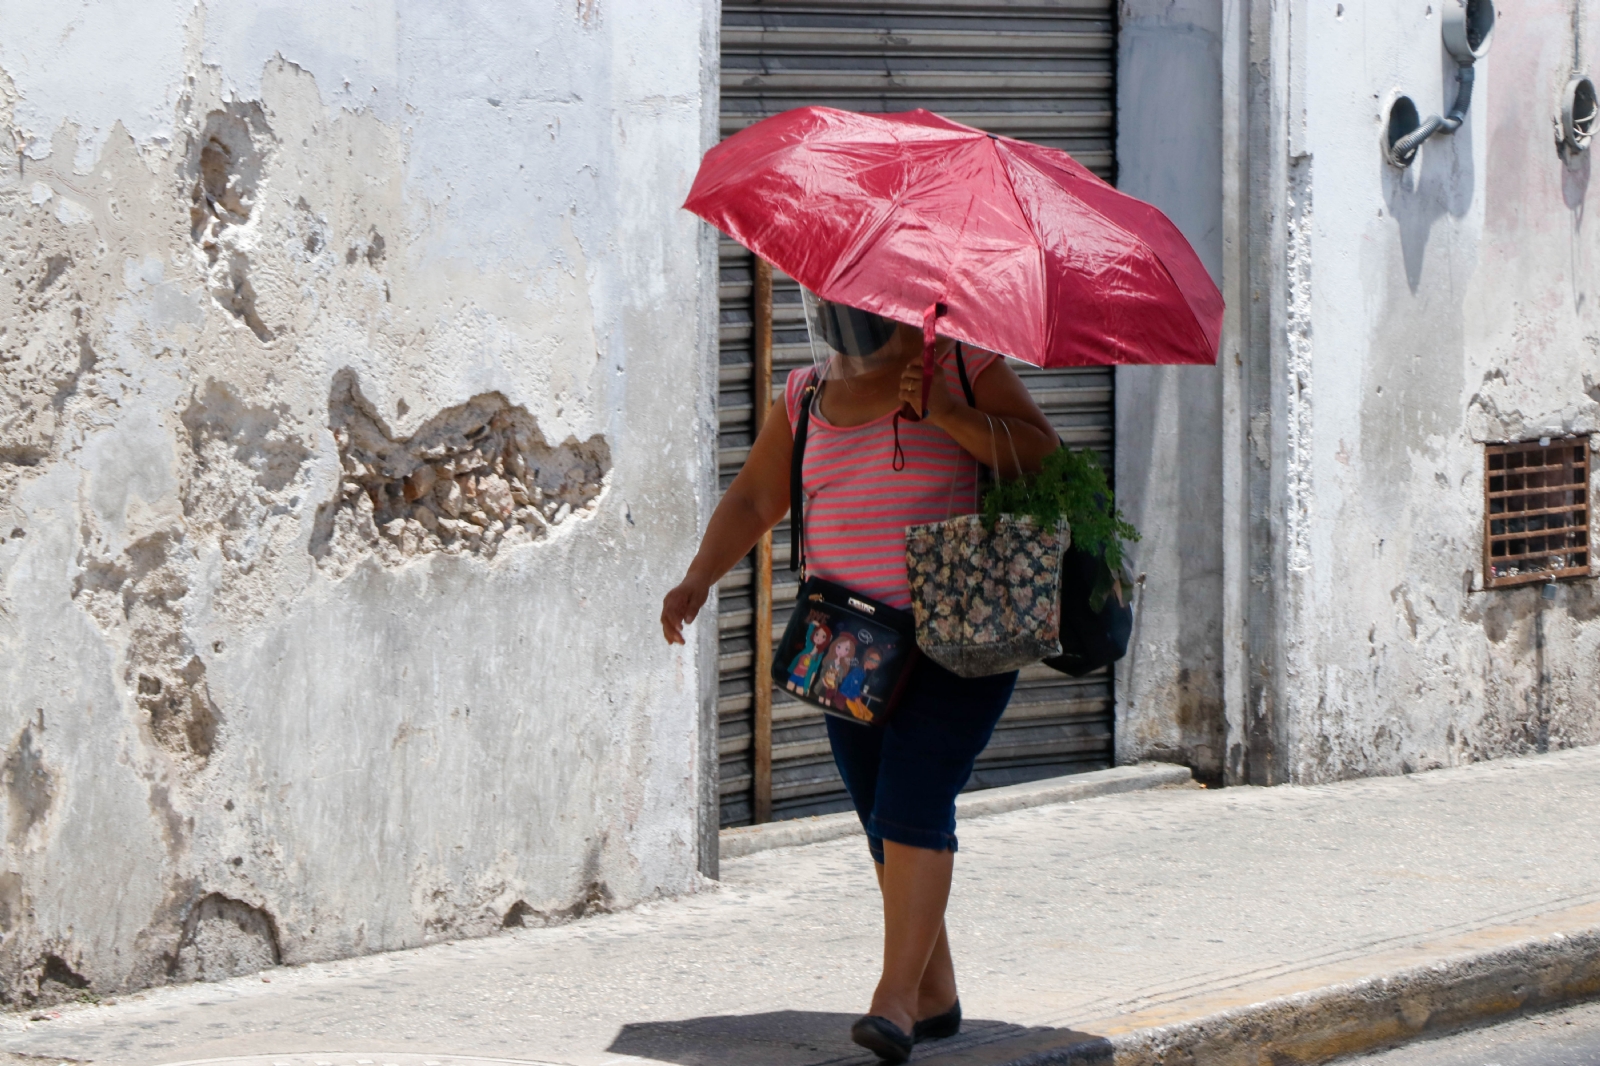 Clima Campeche 9 de abril: Se esperan temperaturas calurosas para este domingo